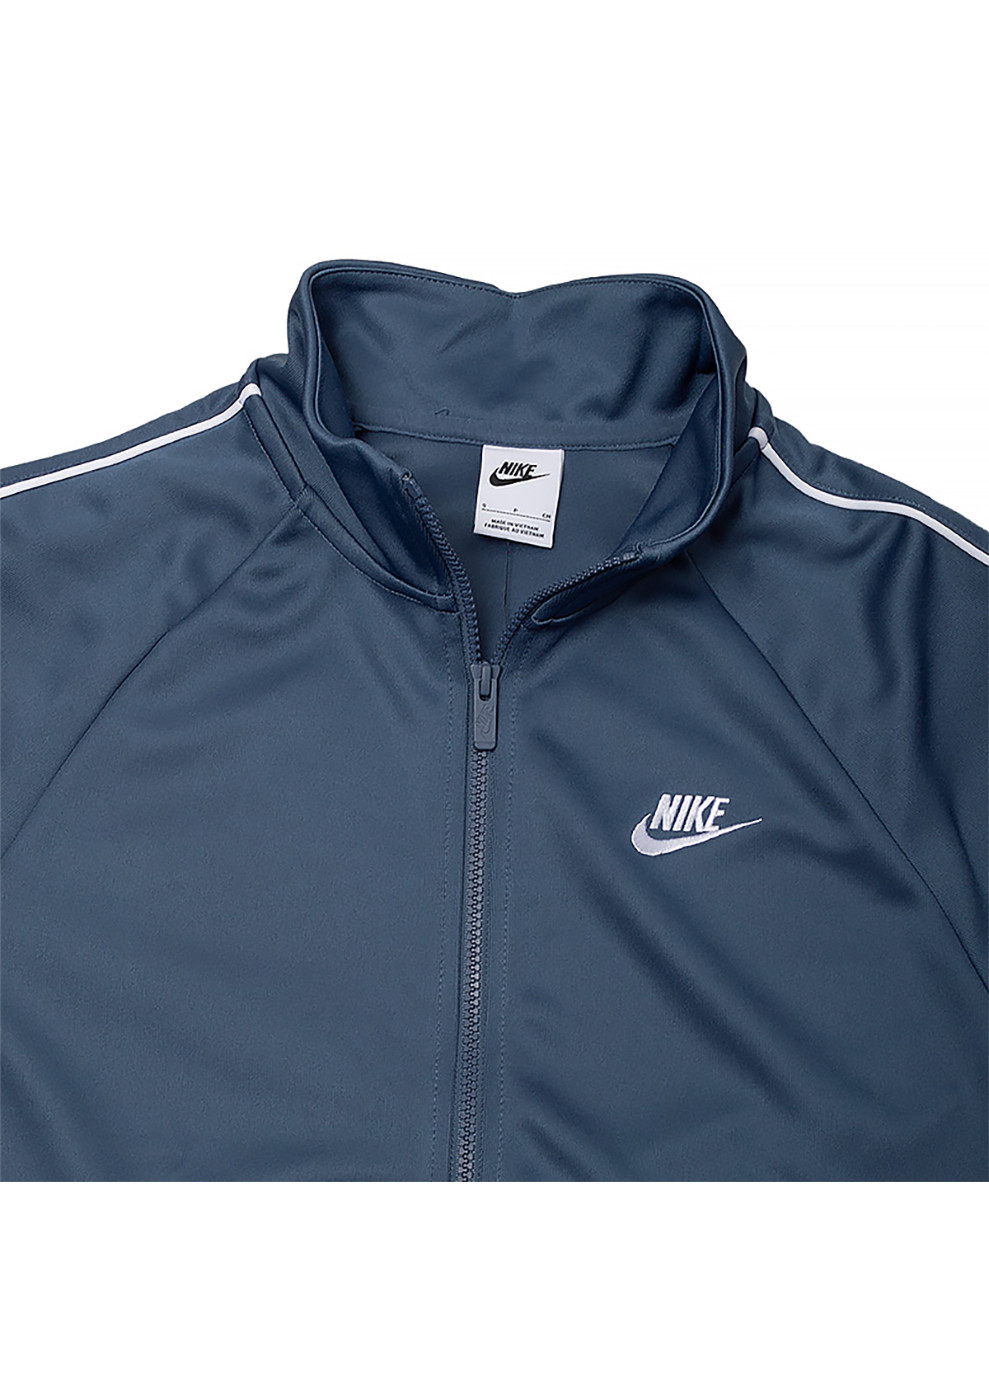 Синяя демисезонная мужская куртка m nk club pk fz jkt синий Nike